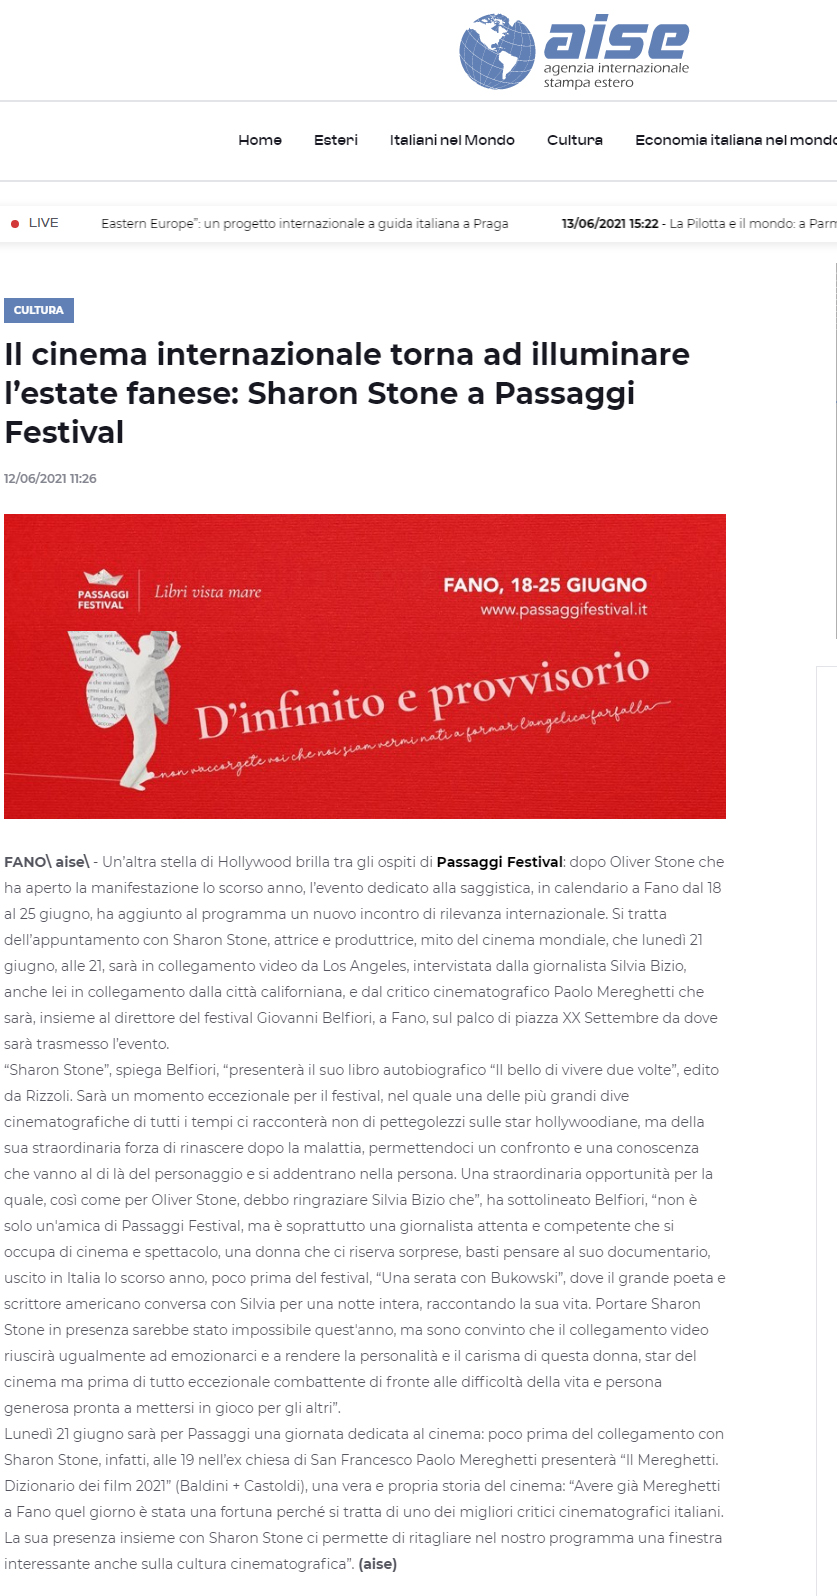 aise-it-il-cinema-internazionale-torna-ad-illuminare-lestate-fanese-sharon-stone-a-passaggi-festival